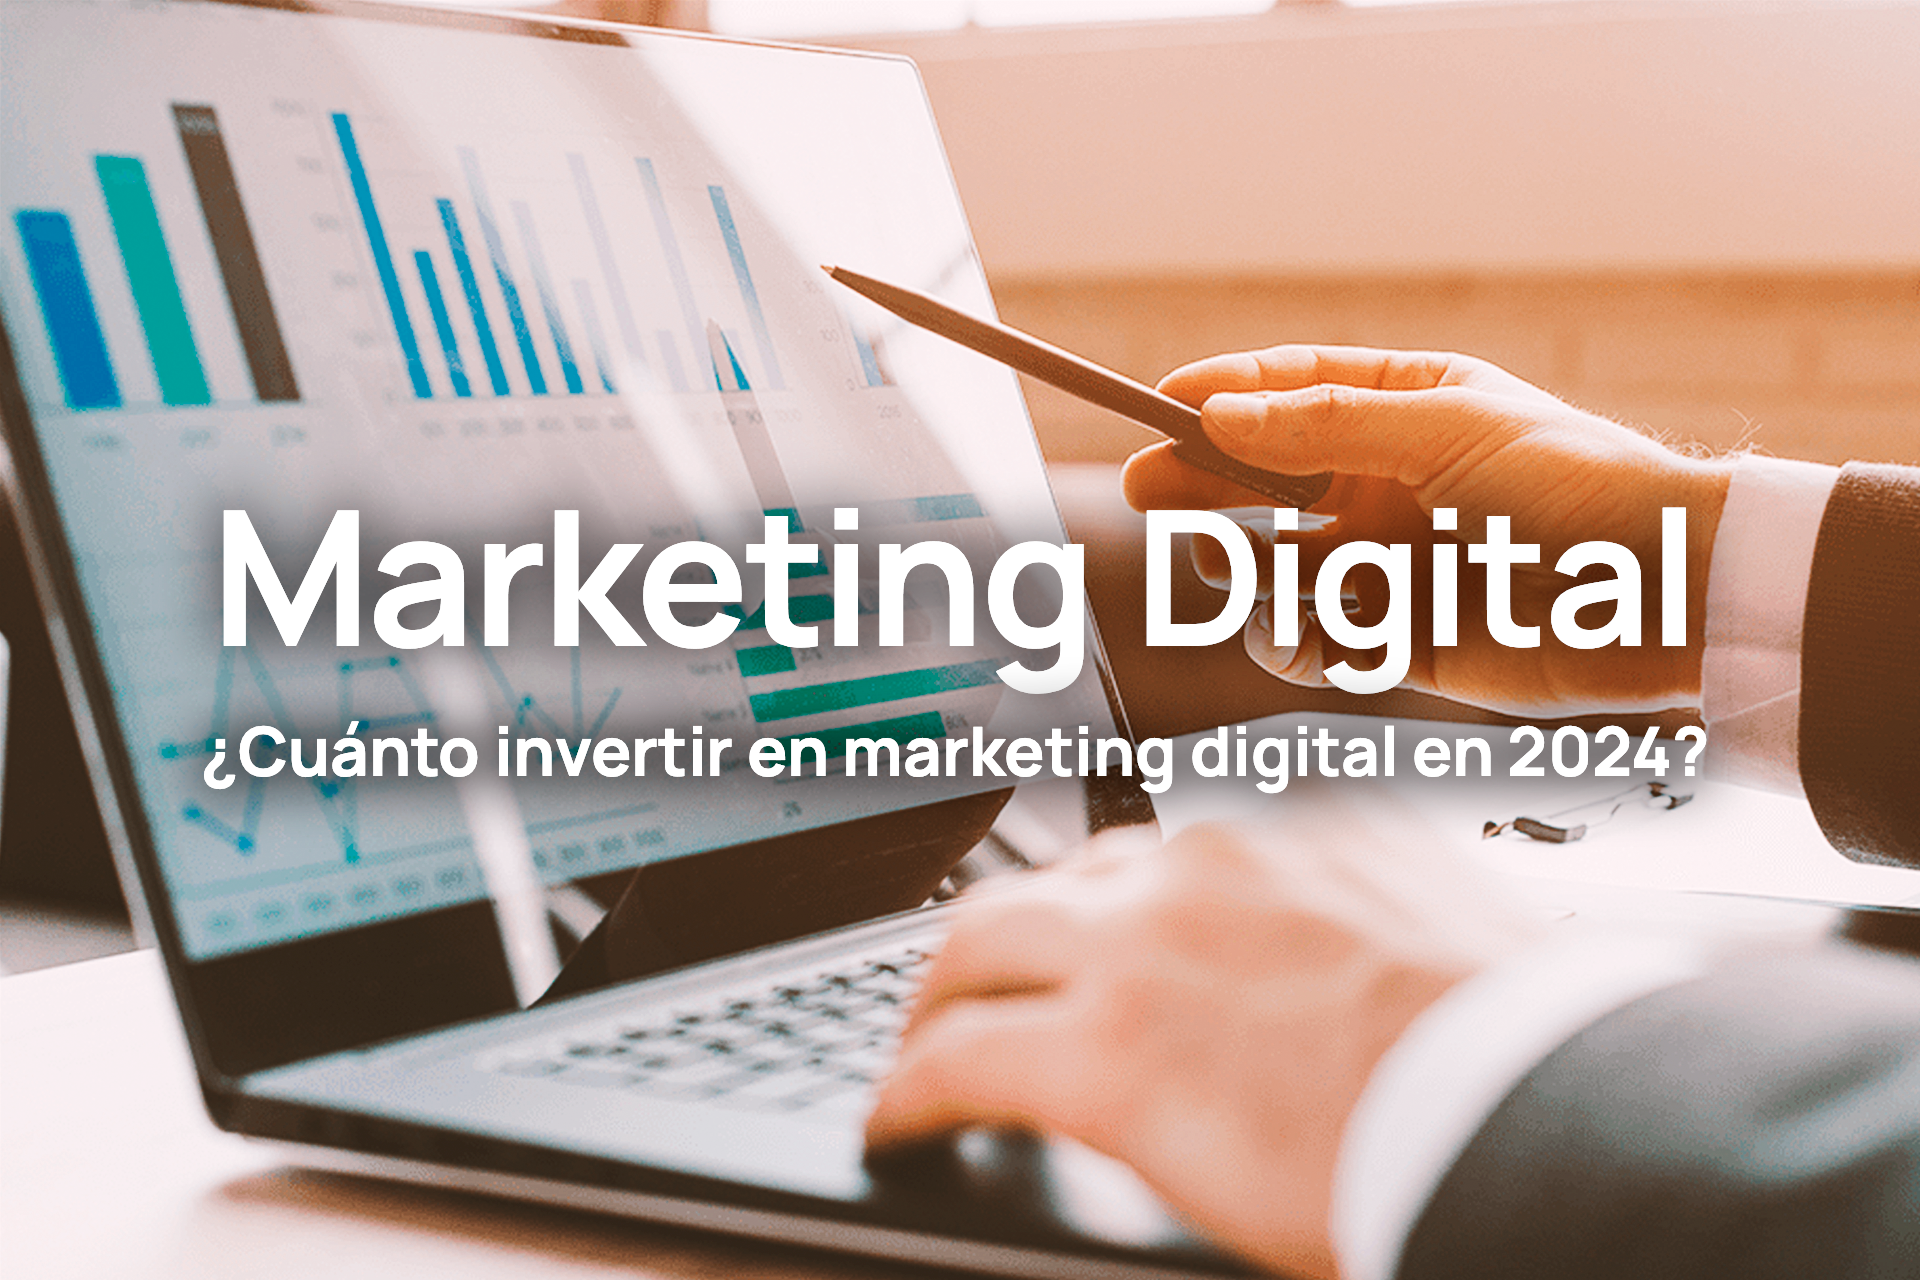 ¿Cuánto invertir en marketing digital en 2024?